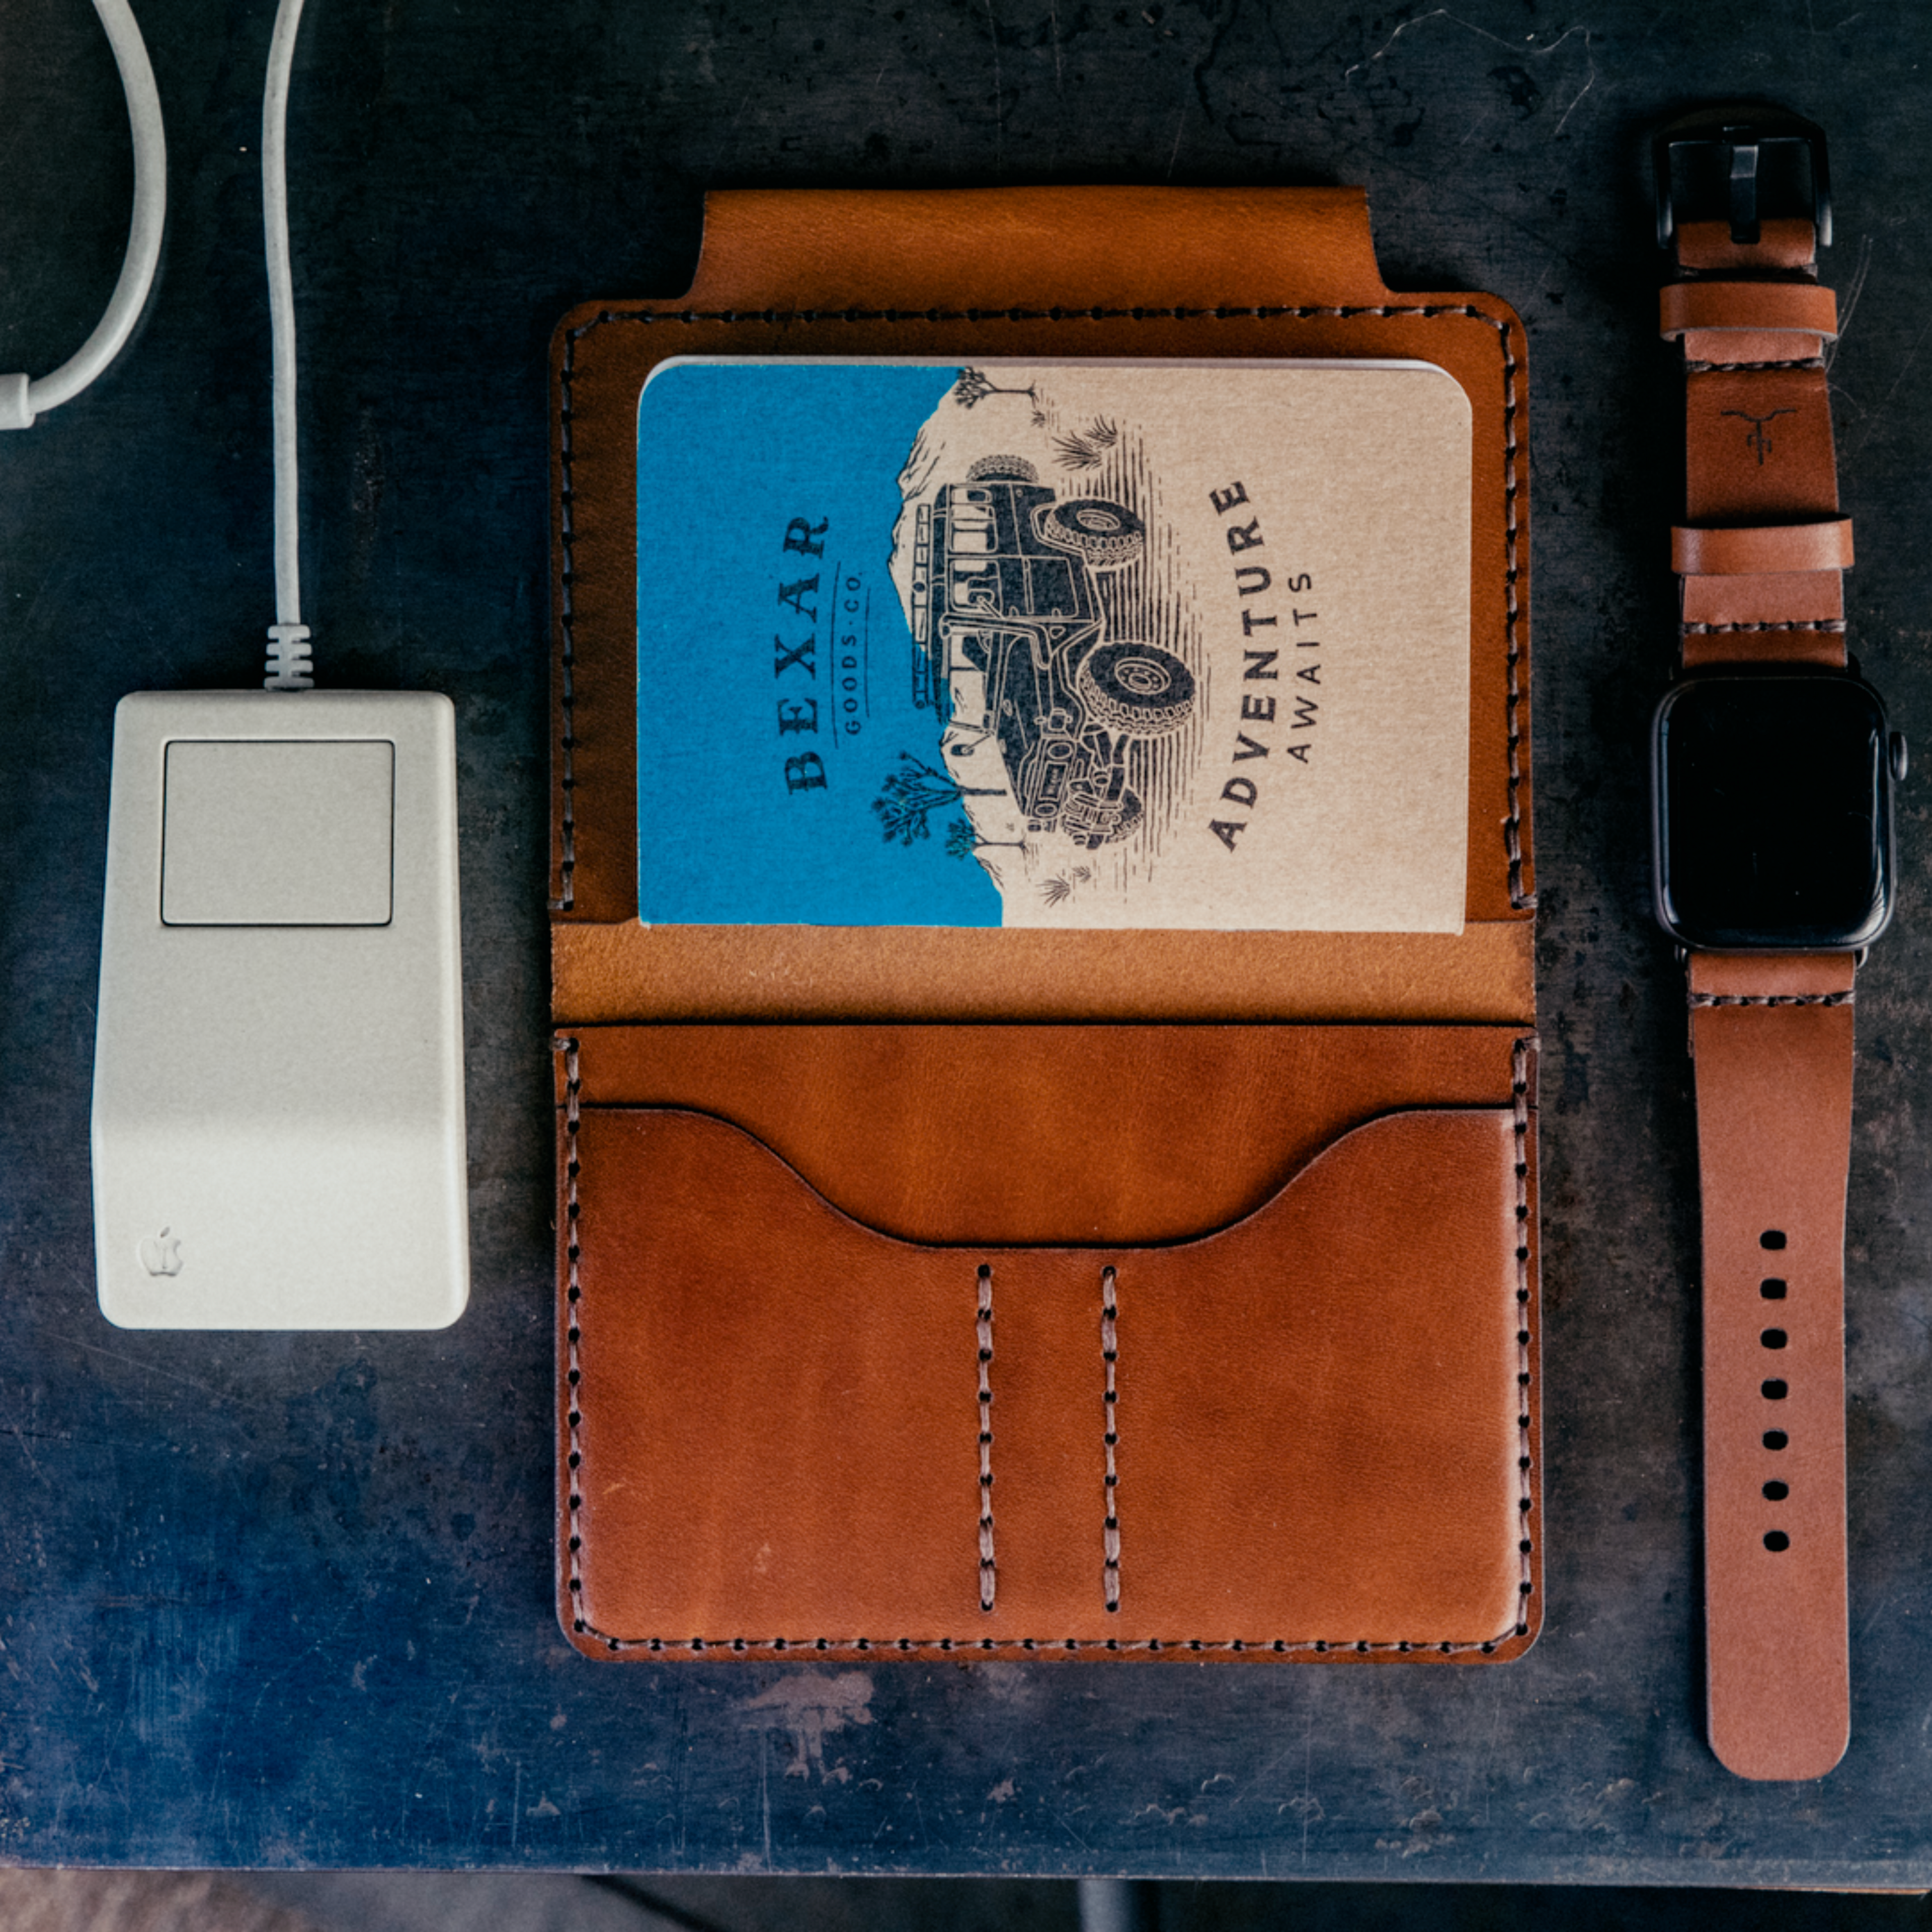 Apple Watch Strap // Medium Brown